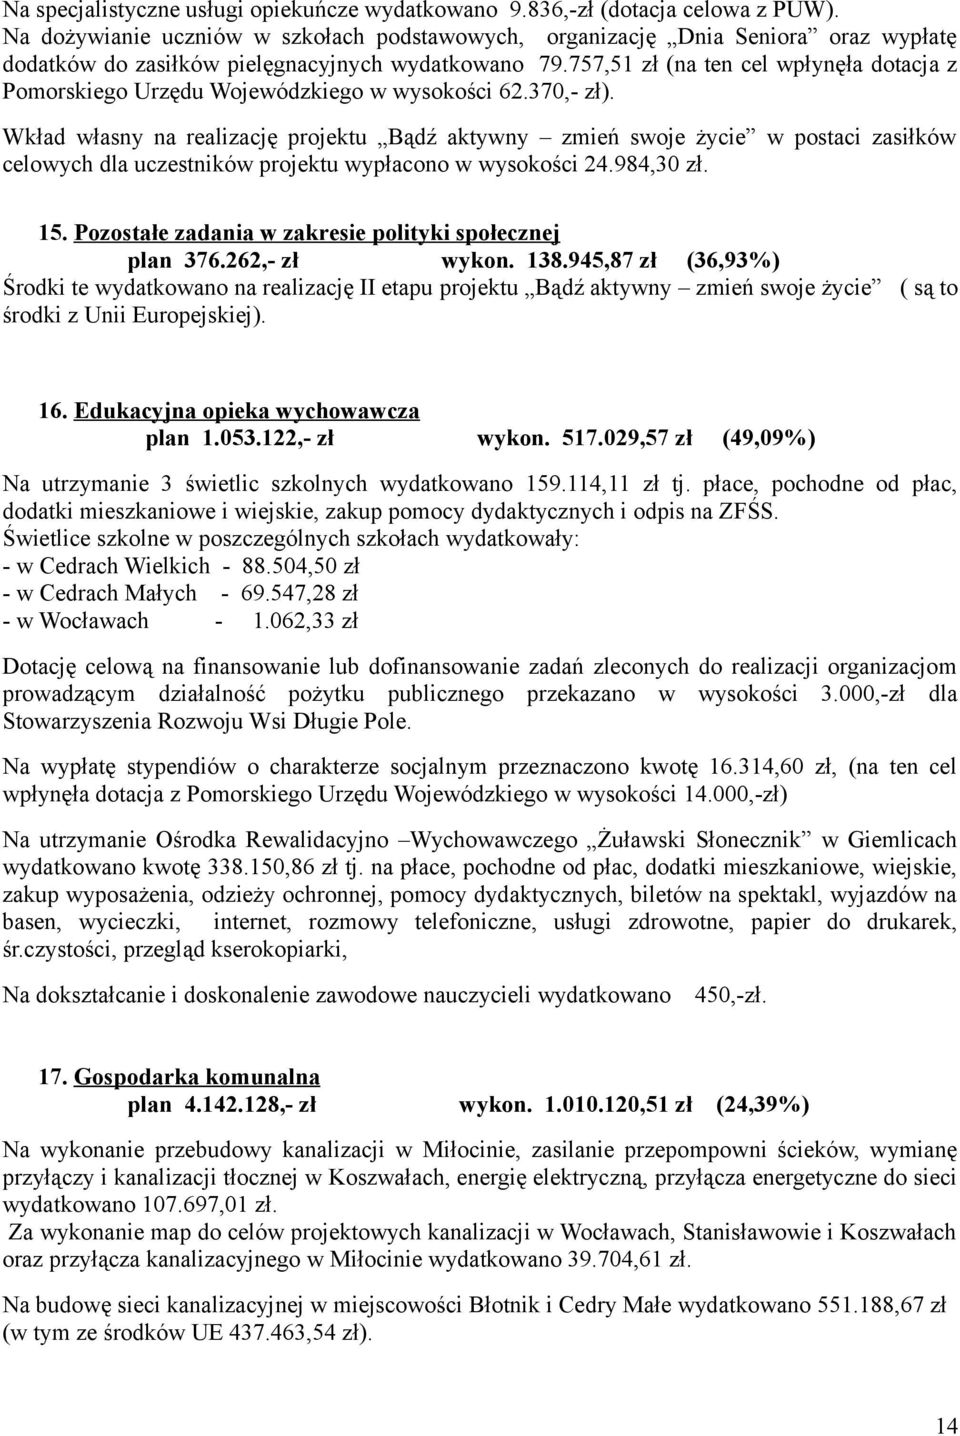 757,51 zł (na ten cel wpłynęła dotacja z Pomorskiego Urzędu Wojewódzkiego w wysokości 62.370,- zł).